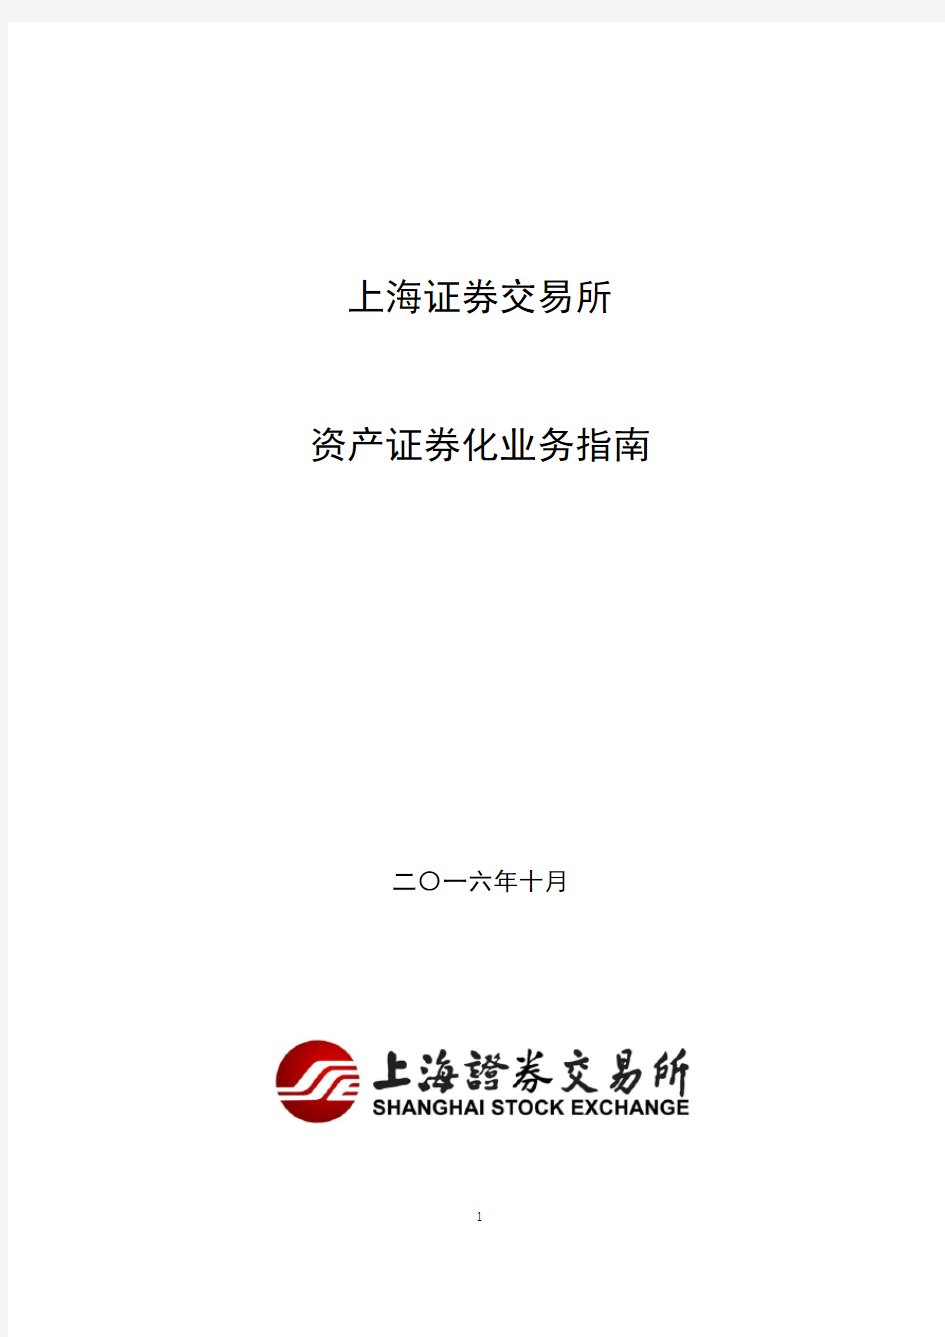 上海证券交易所资产证券化业务指南(2016年10月修订)